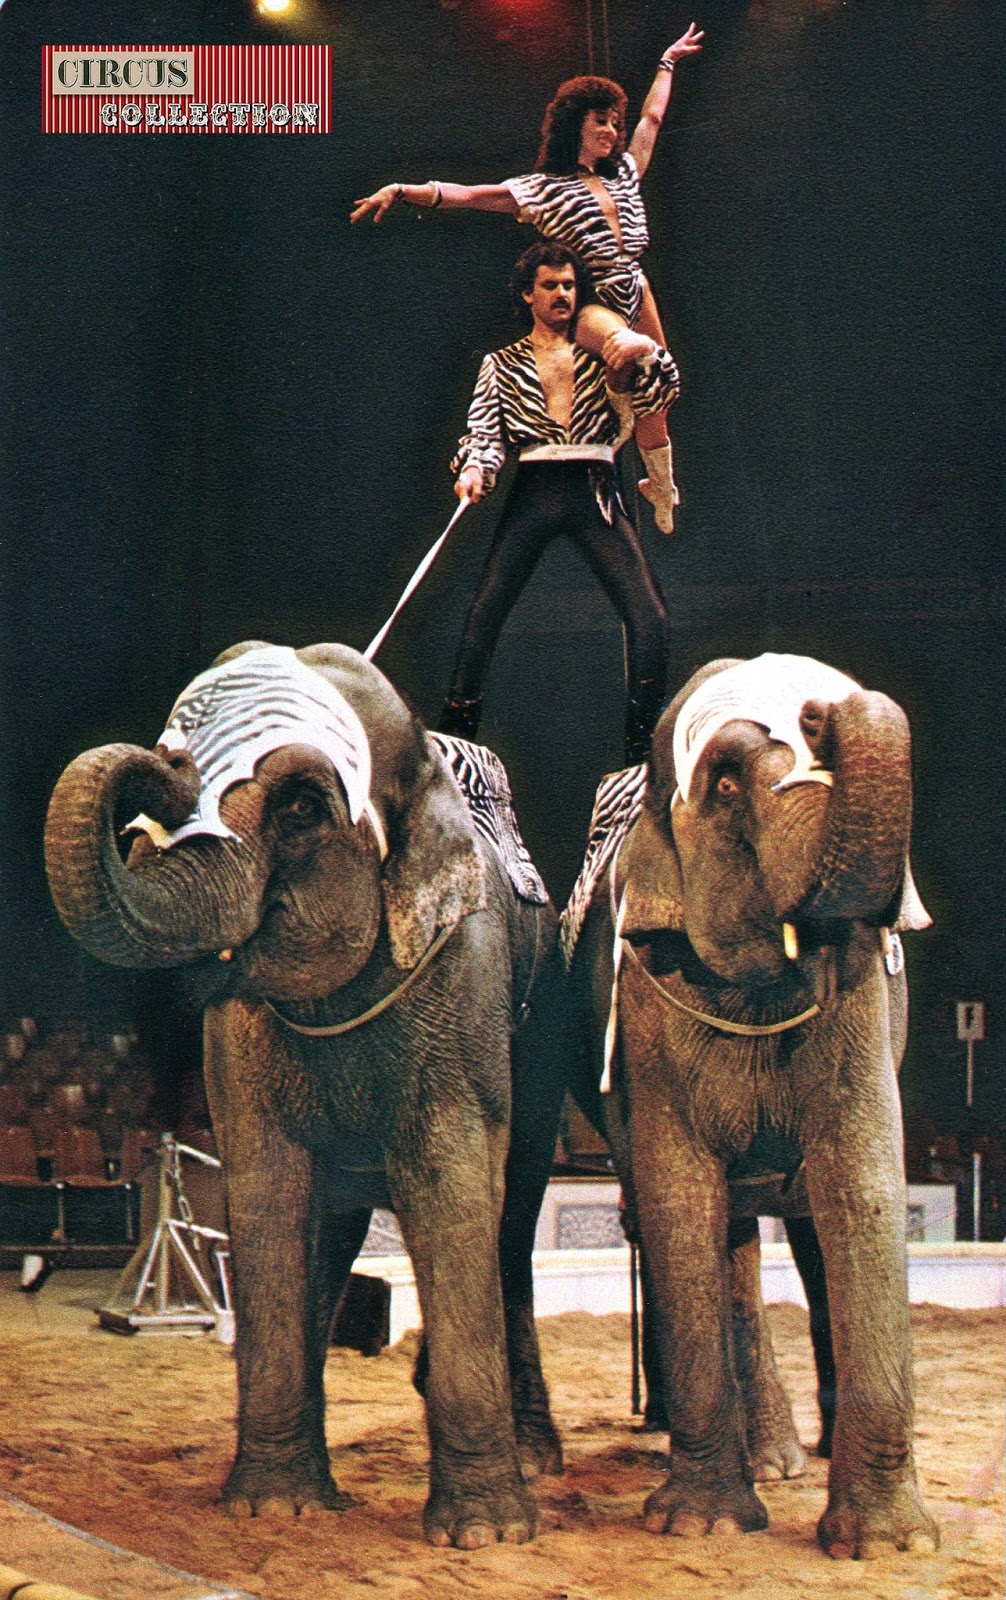 Circus -Collection: Les éléphants au cirque Knie 1980-1989